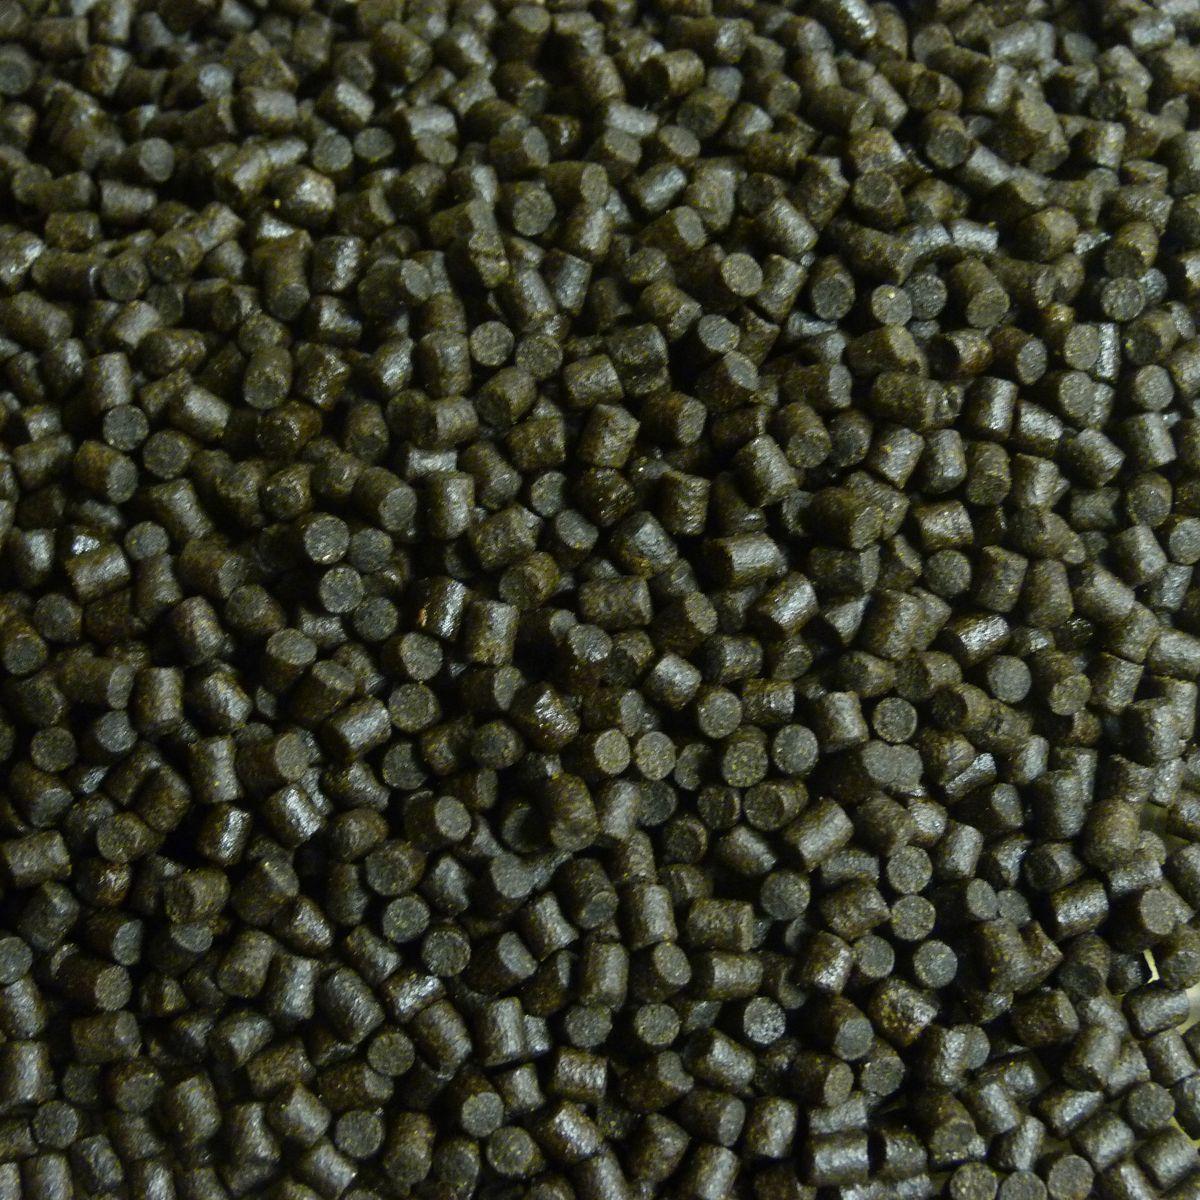 Coppens Halibut pellets | 6 mm